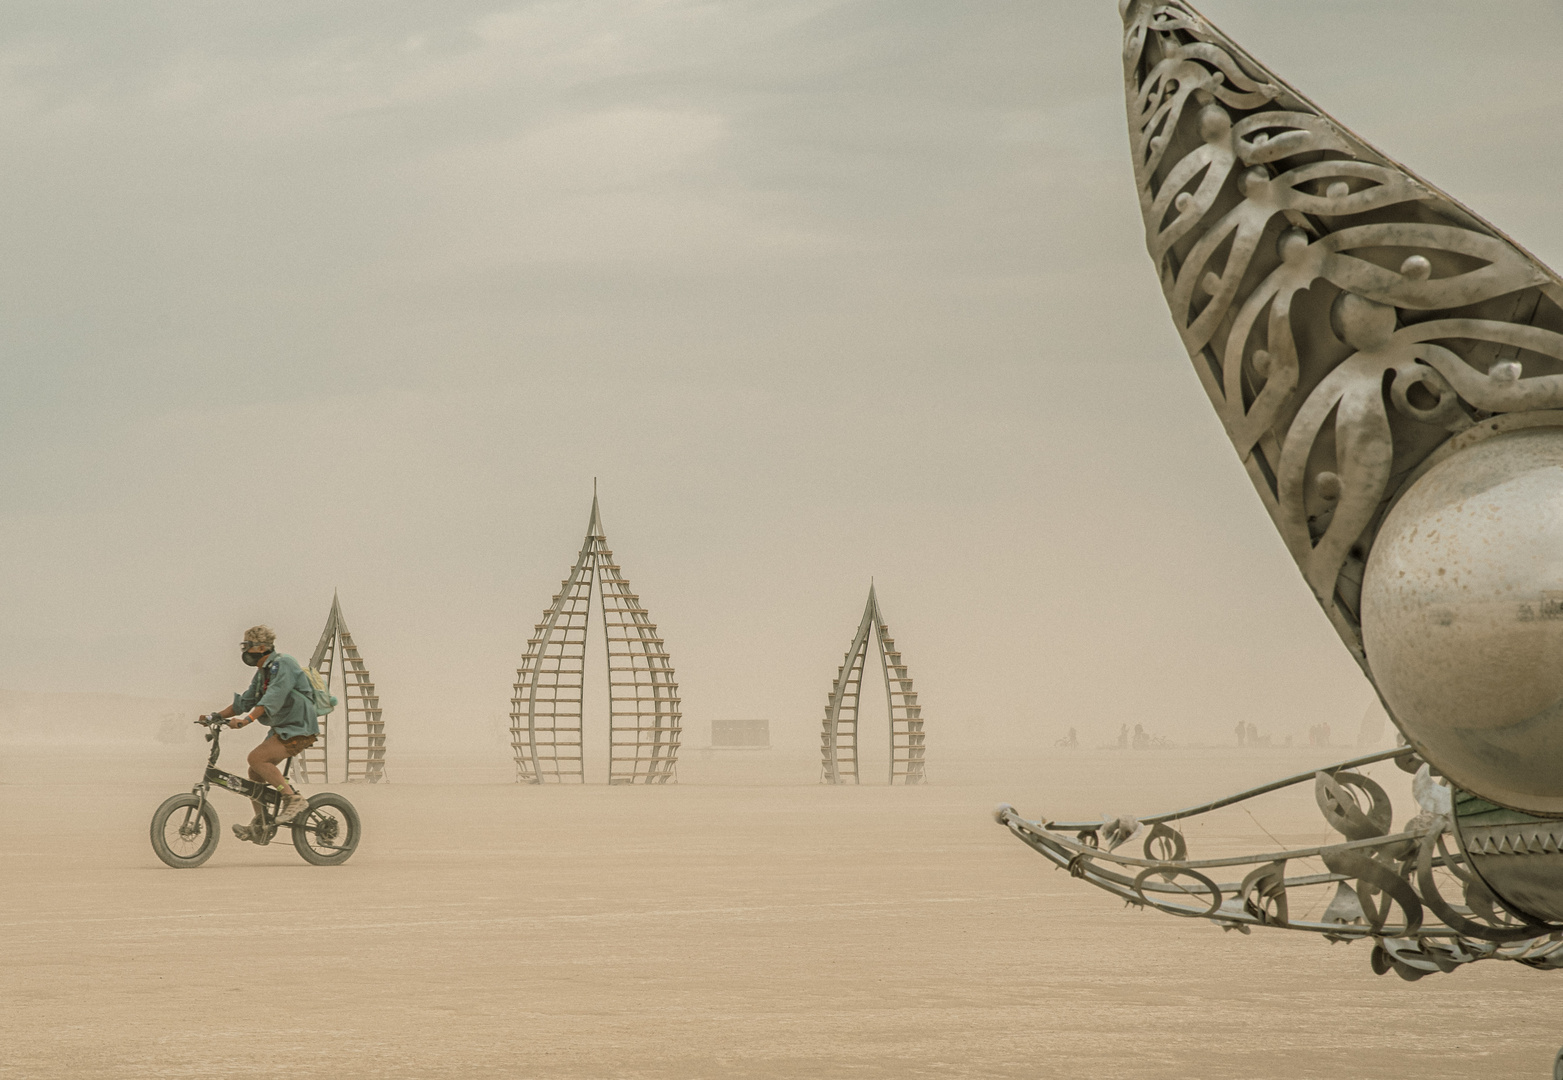 Burning Man Festival - Lonesom Rider